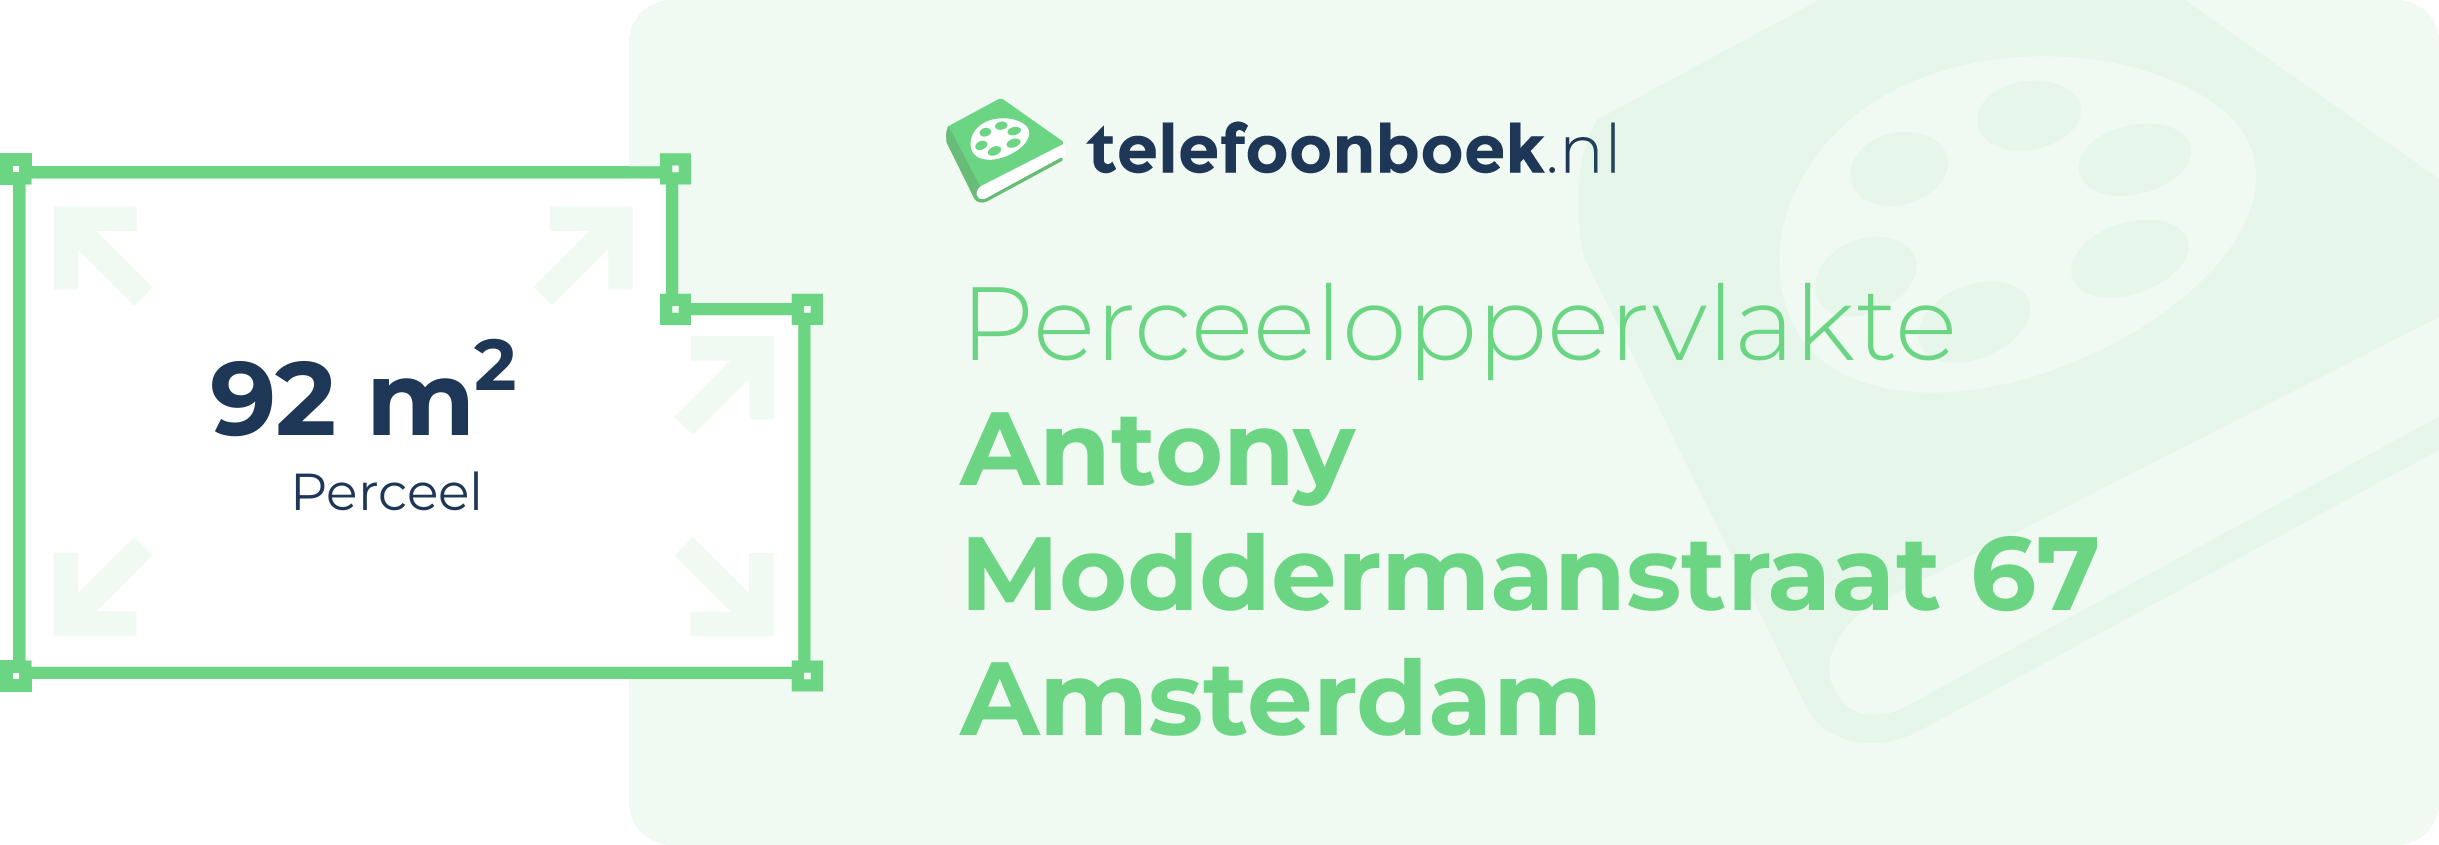 Perceeloppervlakte Antony Moddermanstraat 67 Amsterdam